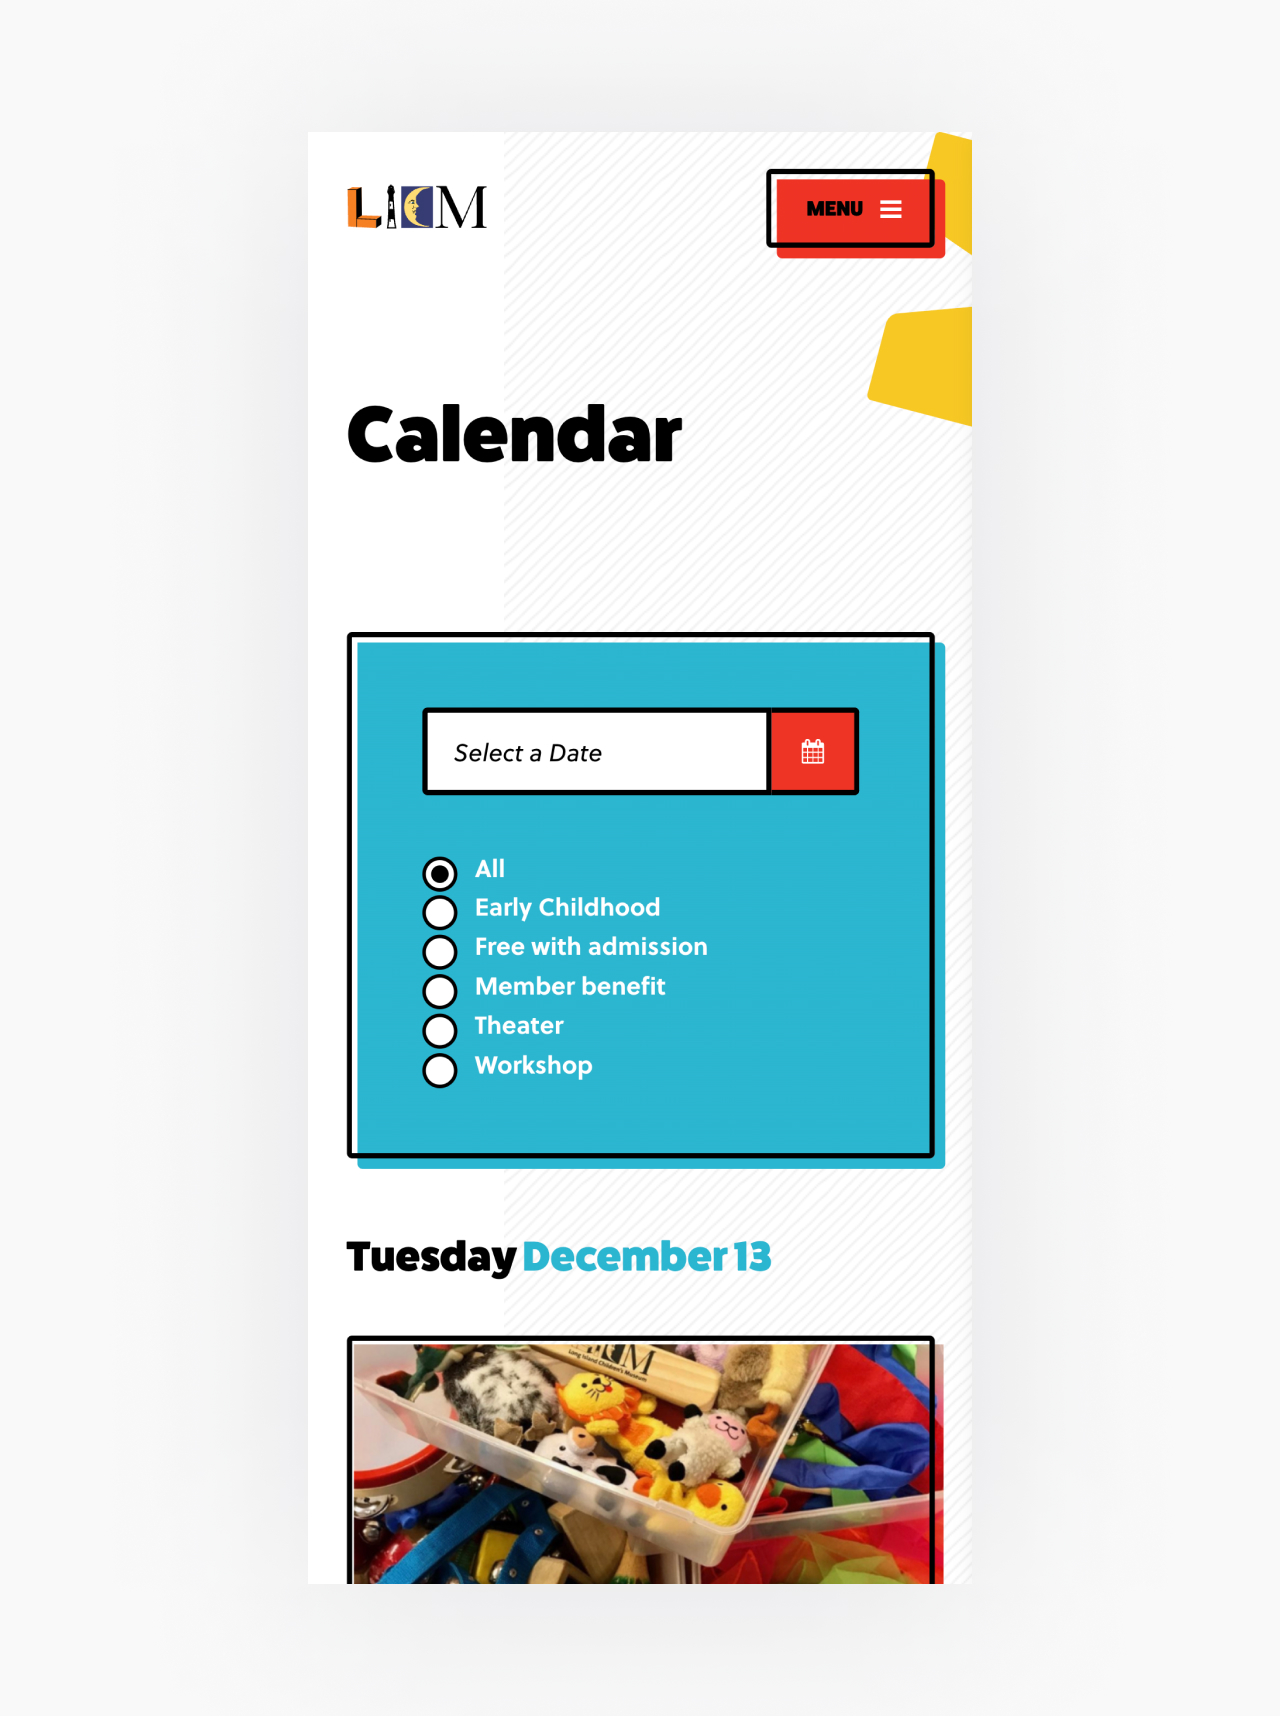 Long Island Children's Museum website calendar mobile screenshot